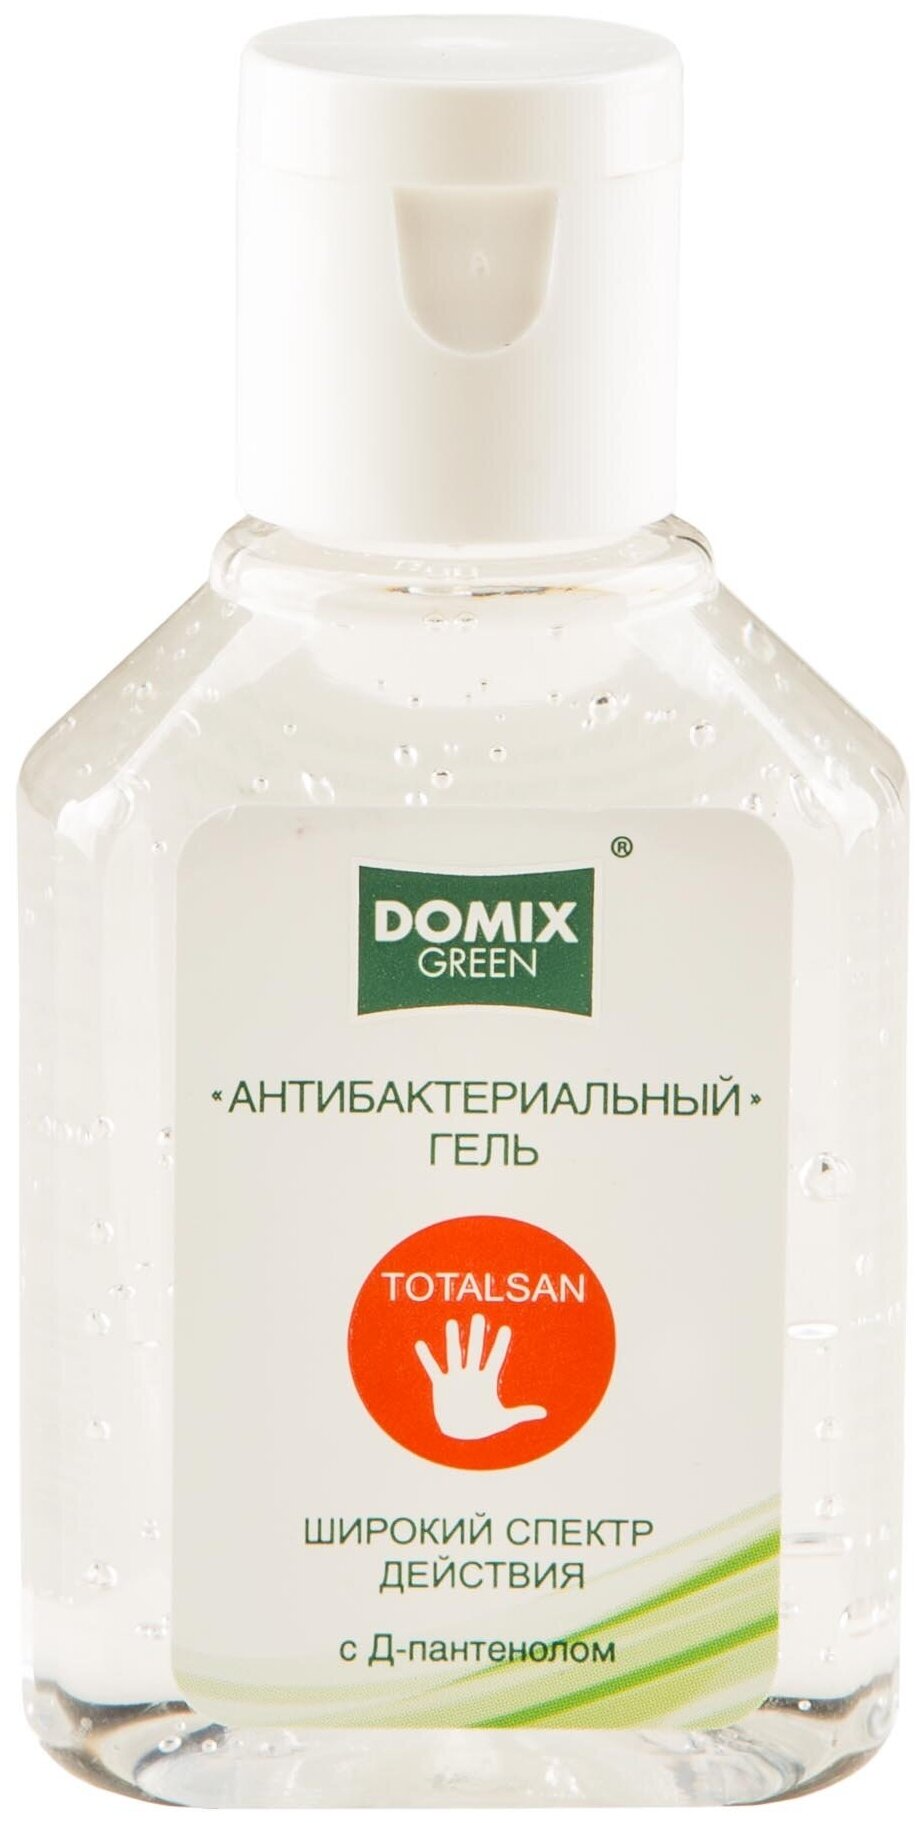 Domix Green Гель антибактериальный Totalsan с Д-пантенолом